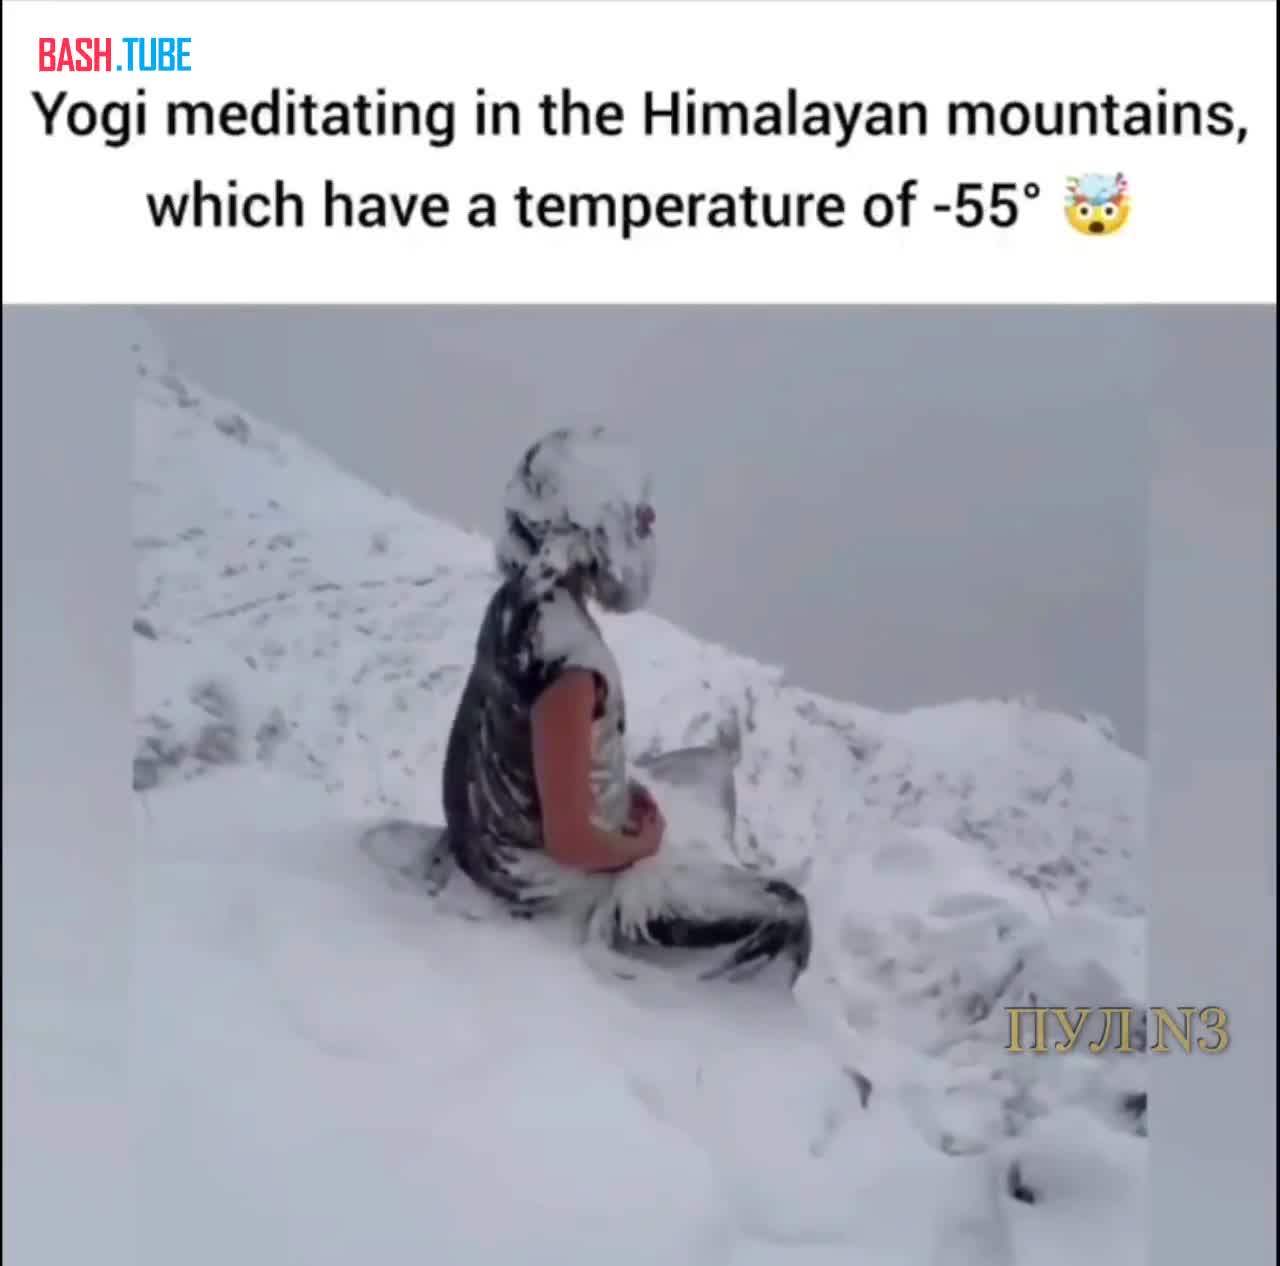  У некоторых свои представления о глобальном потеплении - йог медитирует в Гималаях при температуре минус 55 градусов